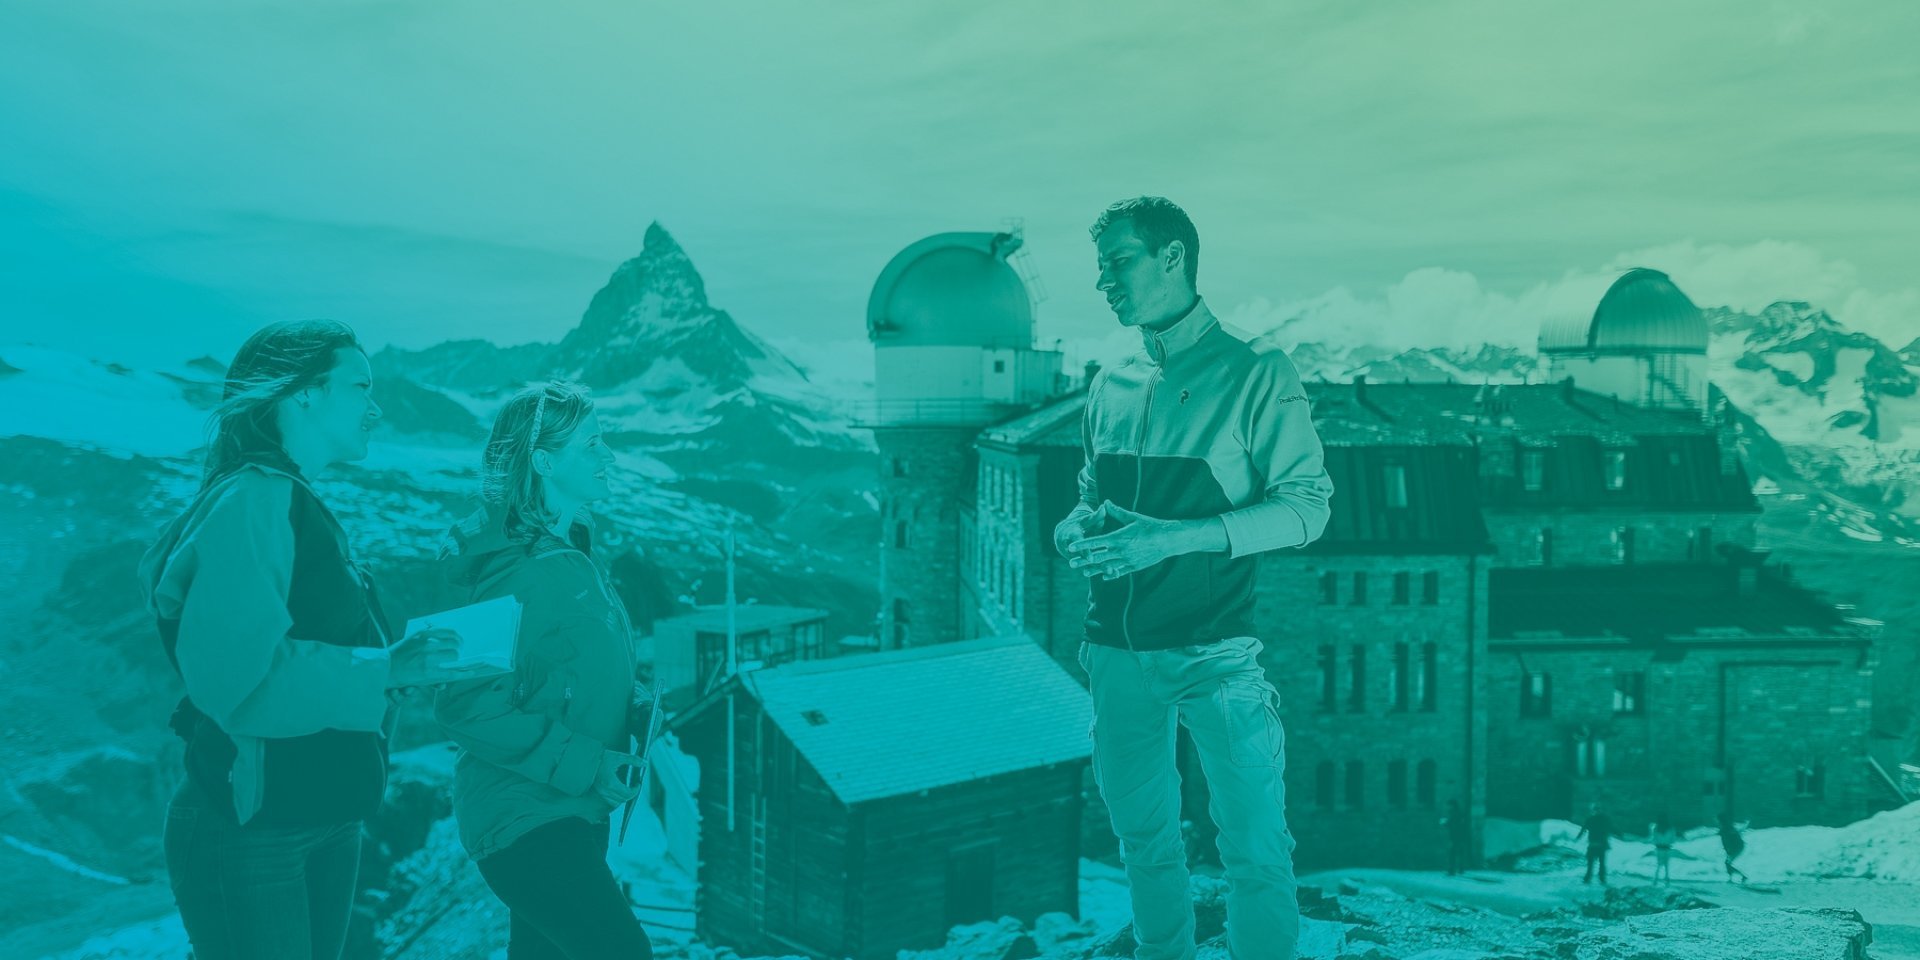 Bachelor en Tourisme en Valais, unique en Suisse, offrant un cursus multilingue (FR/DE/EN) axé sur la durabilité et la digitalisation, formant les futurs dirigeants du secteur touristique et des services.Bachelor of Science HES-SO (BSc) en Tourisme Bachelor of Science HES-SO (BSc) en Tourisme